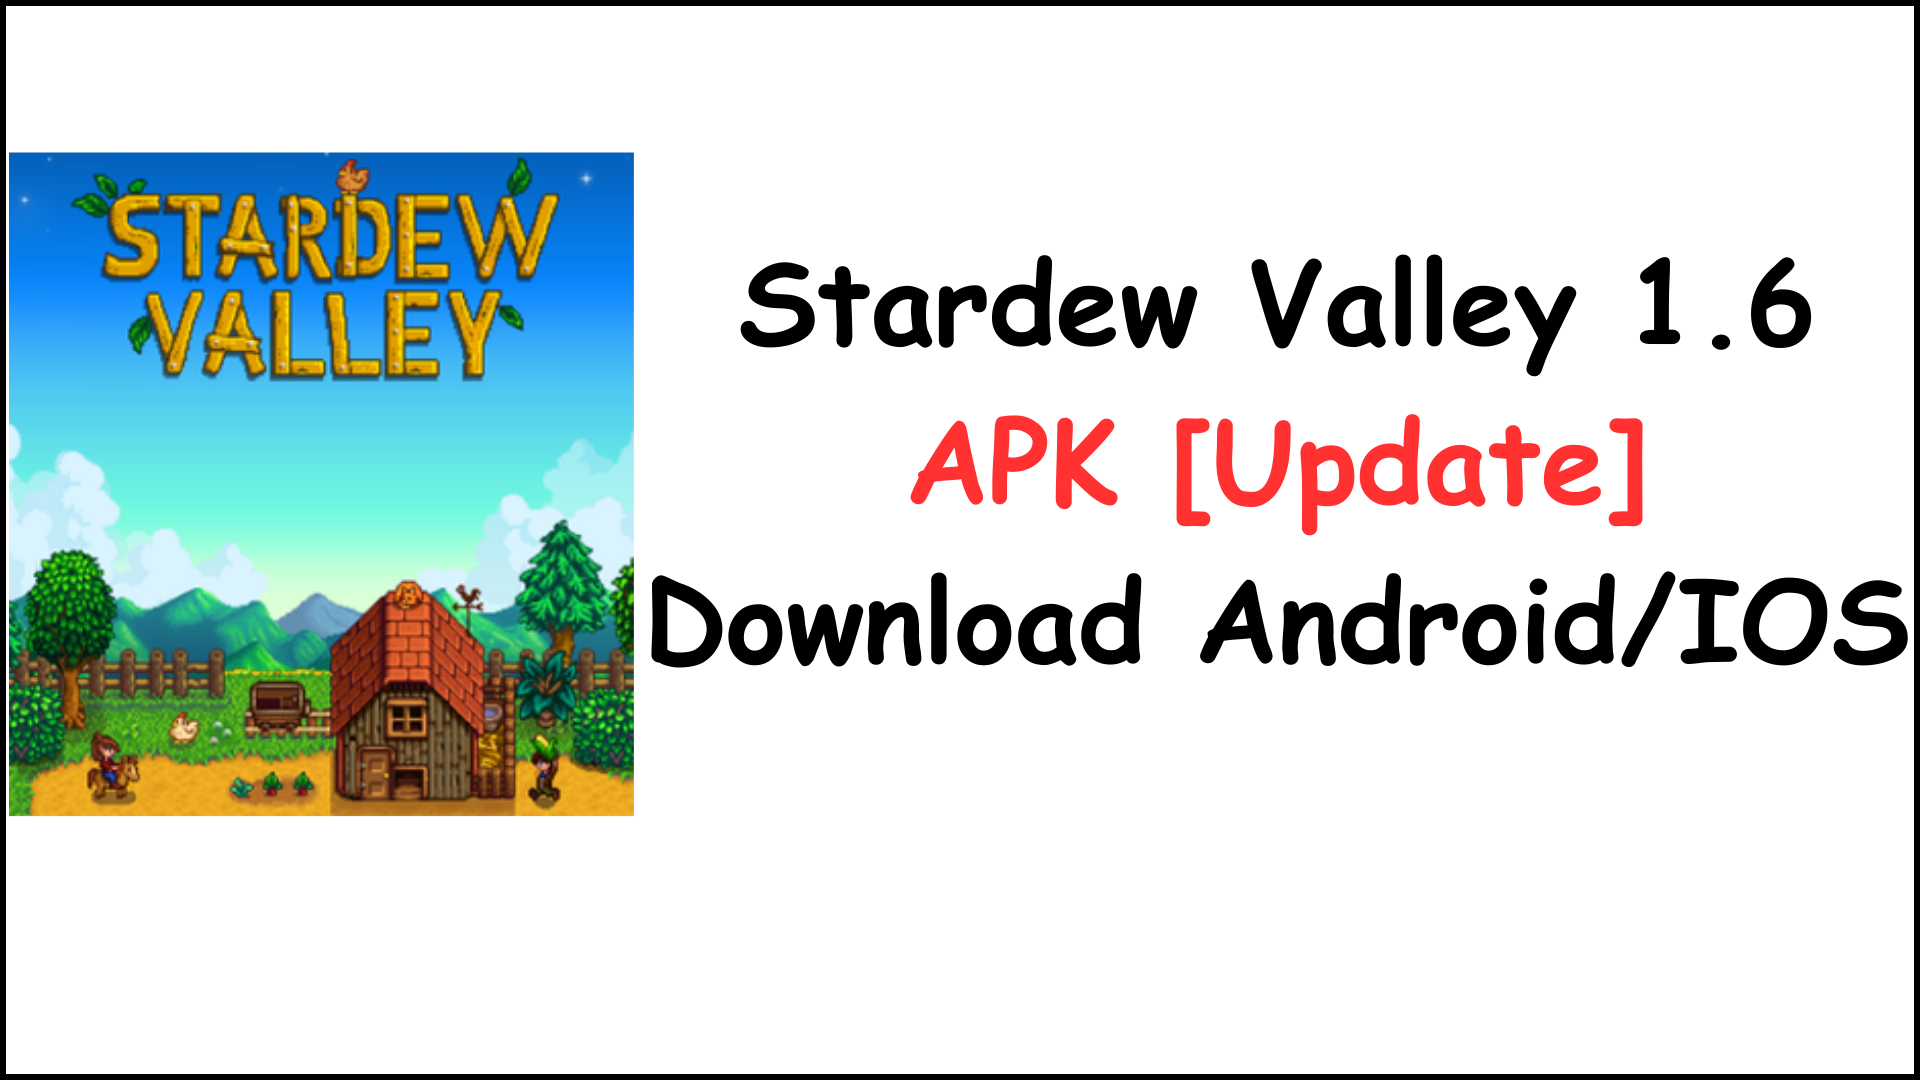 Stardew Valley 1.6 APK